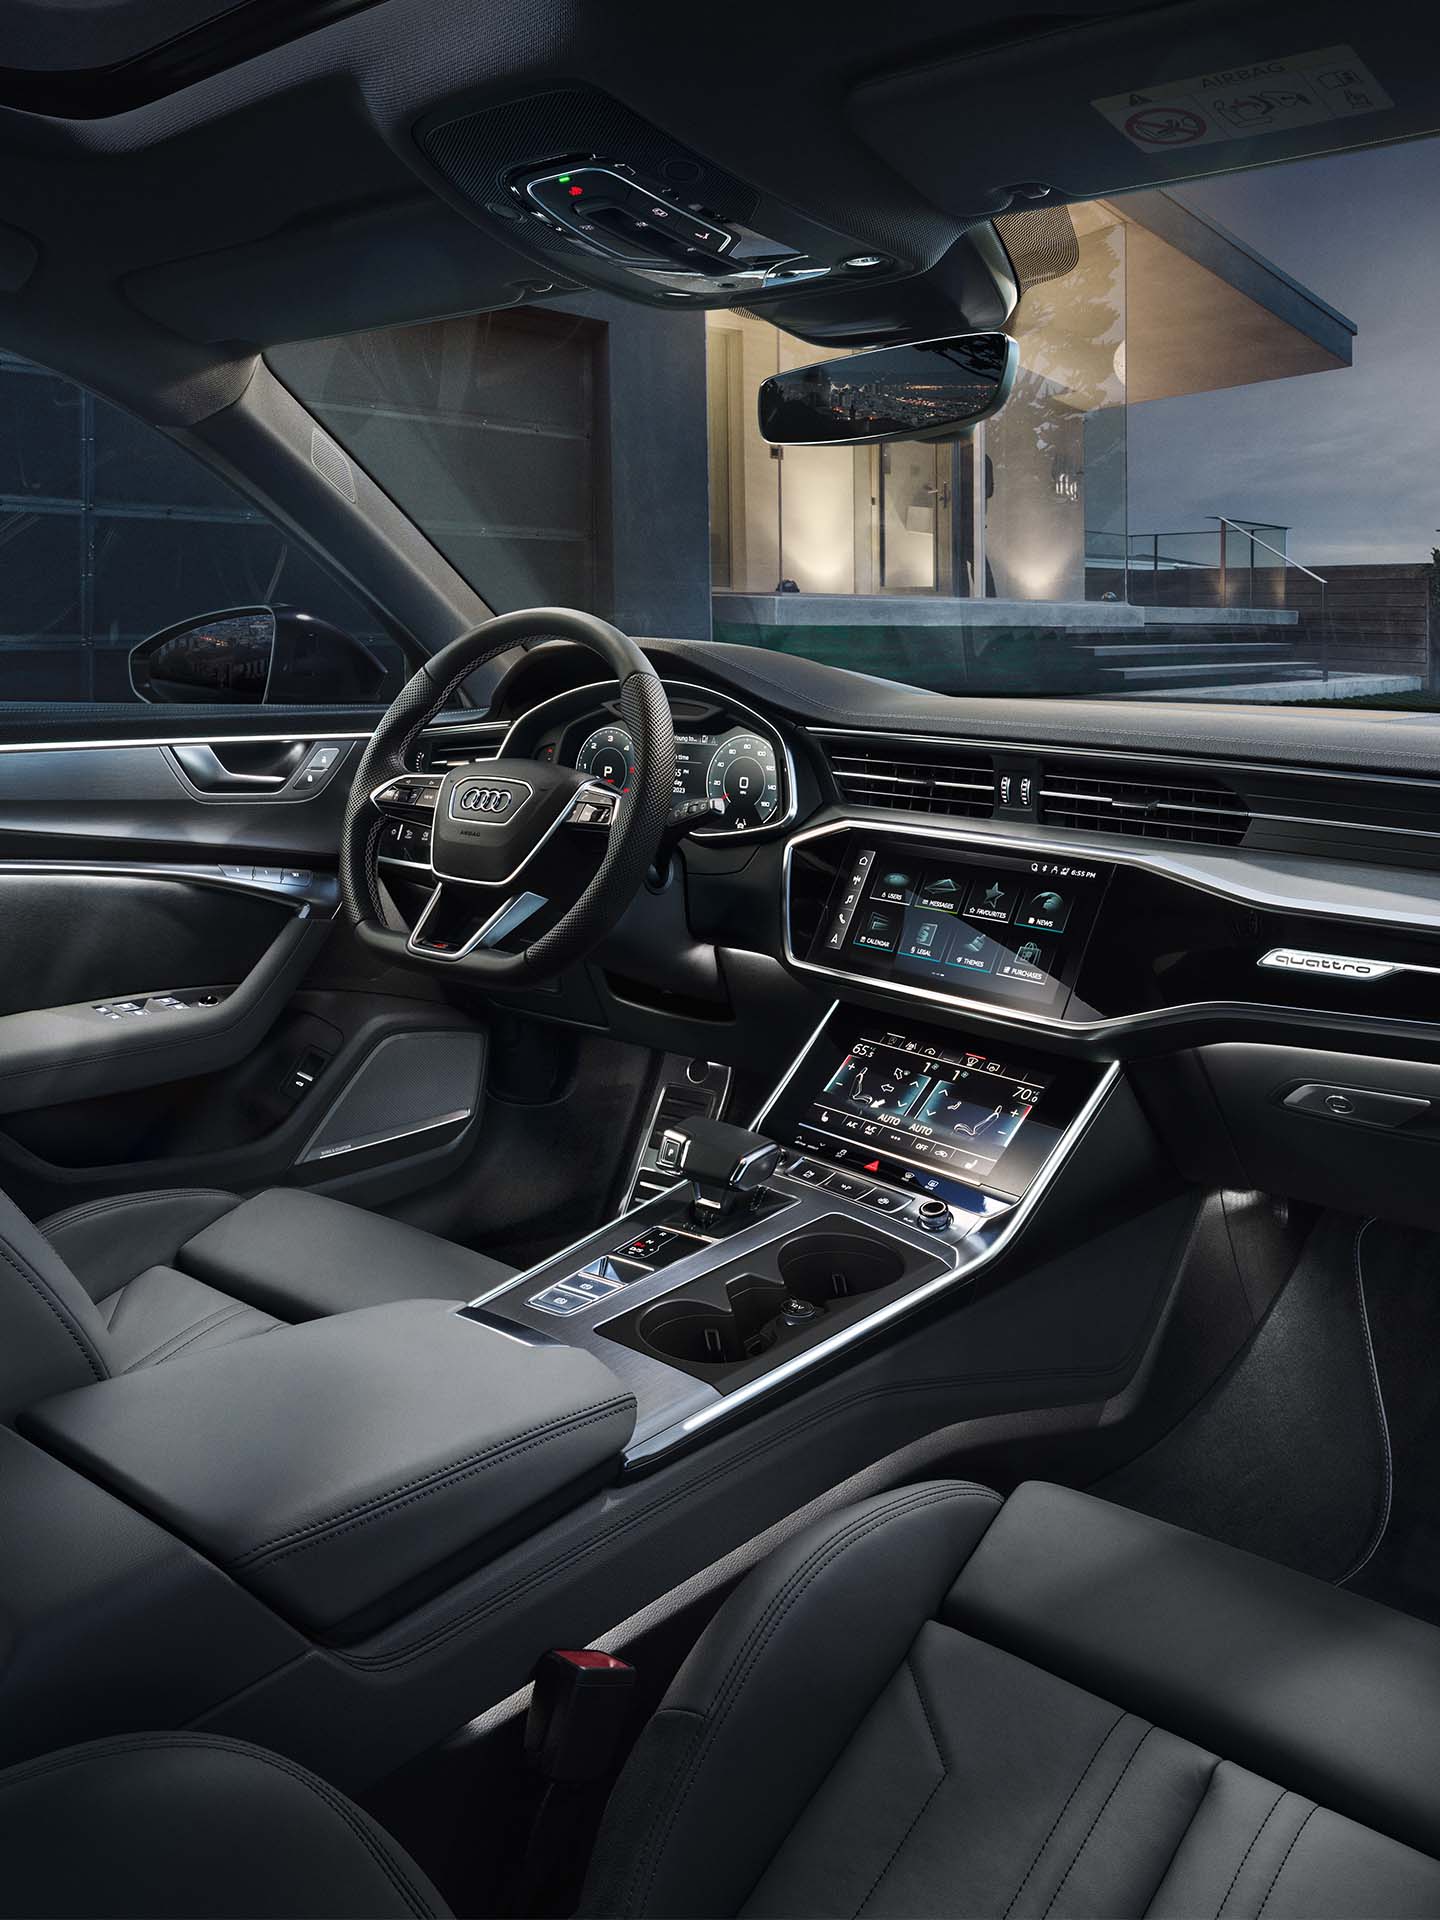 Temalar kokpit görünümünde Audi'yi aydınlatıyor